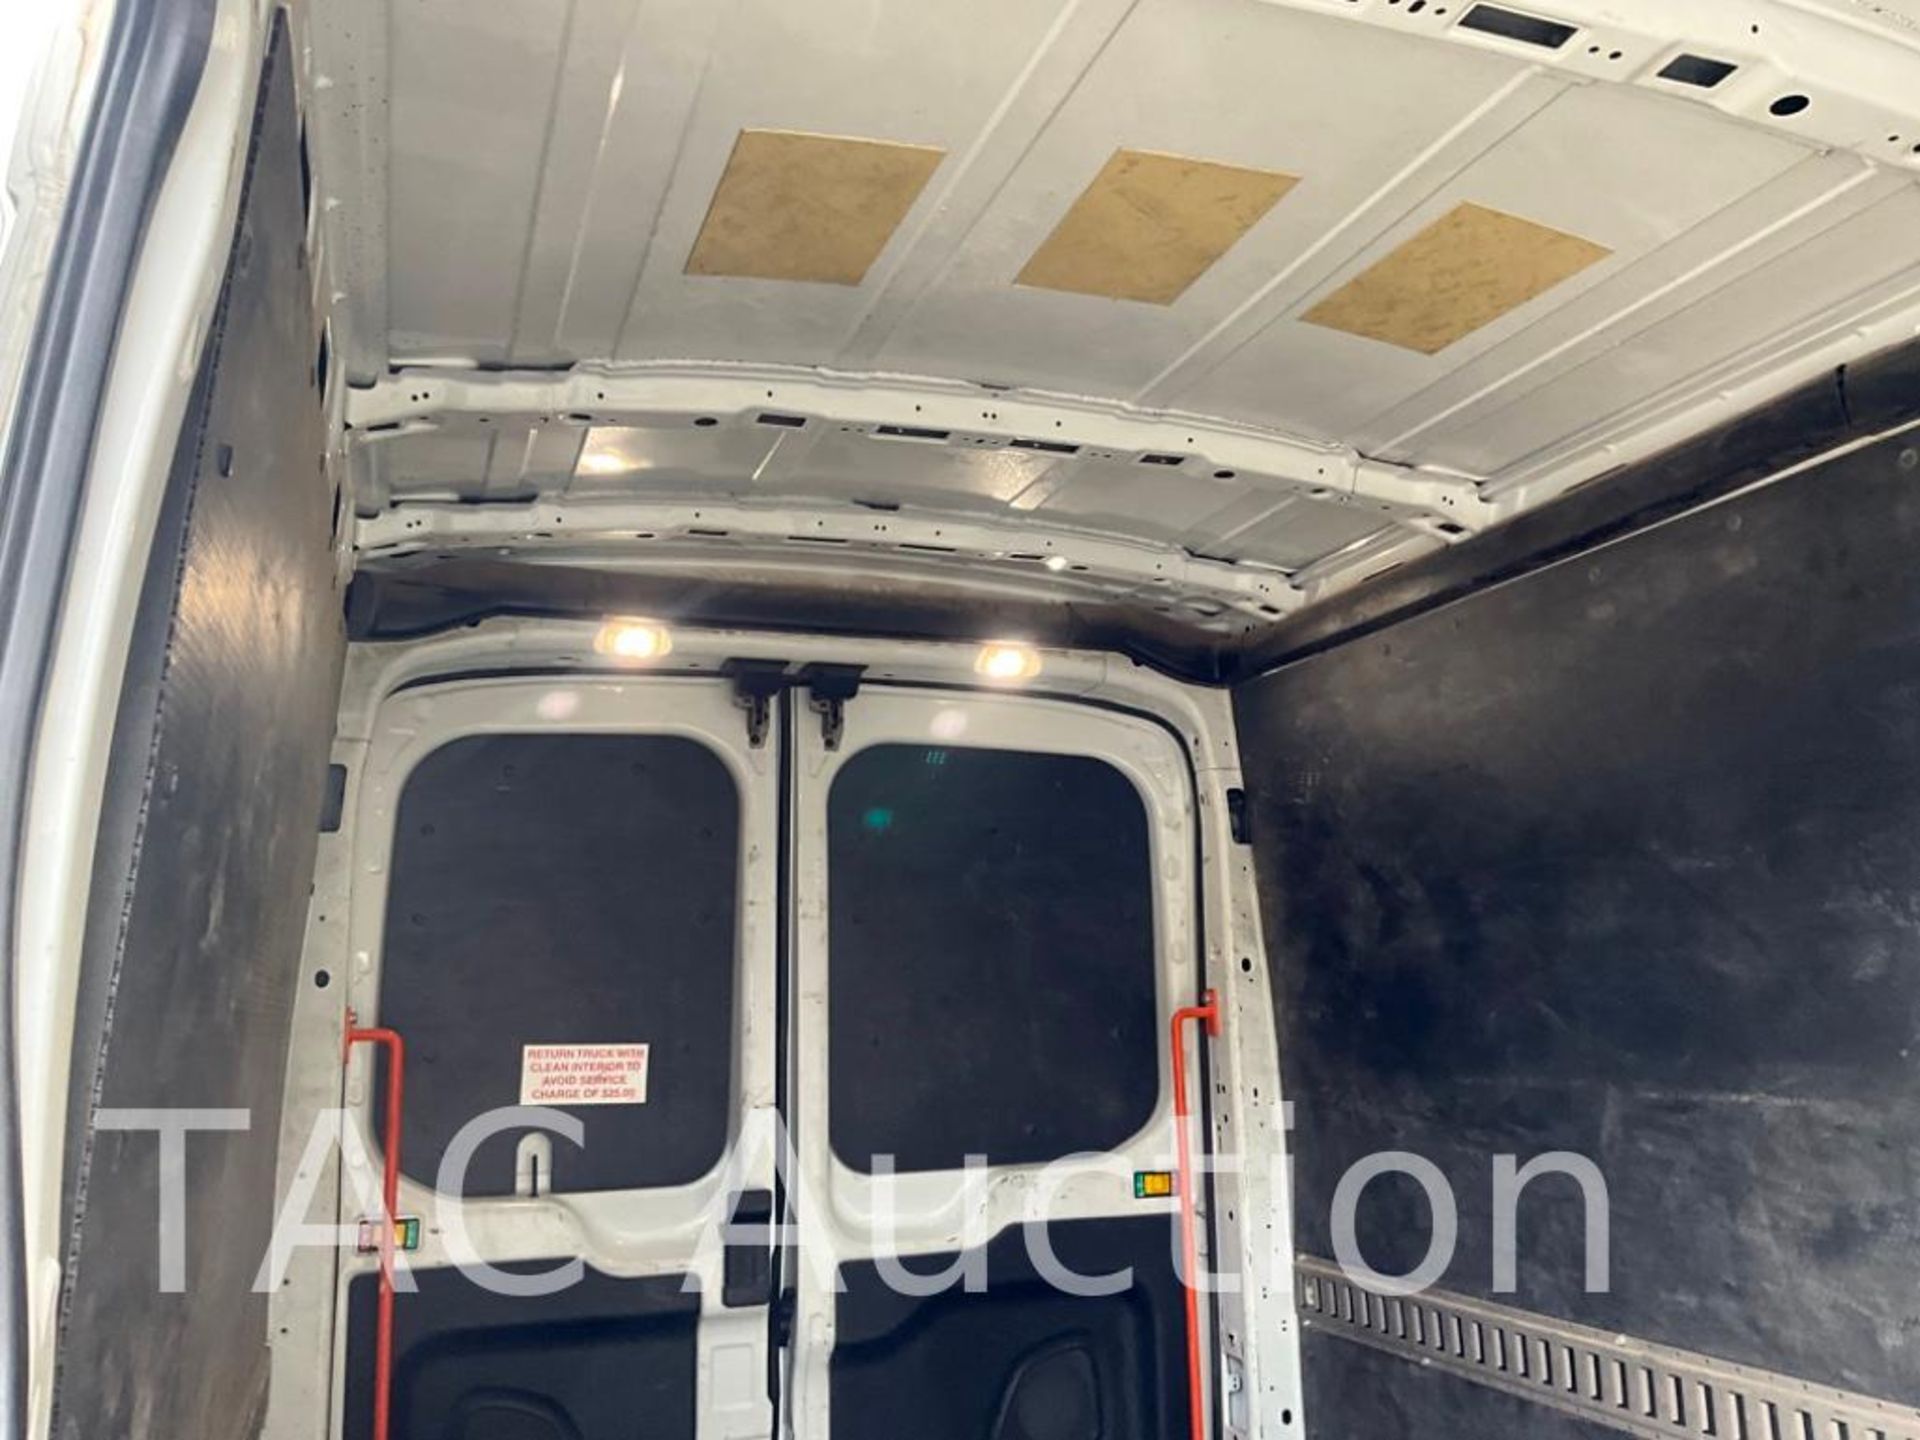 2019 Ford Transit 150 Cargo Van - Image 28 of 46